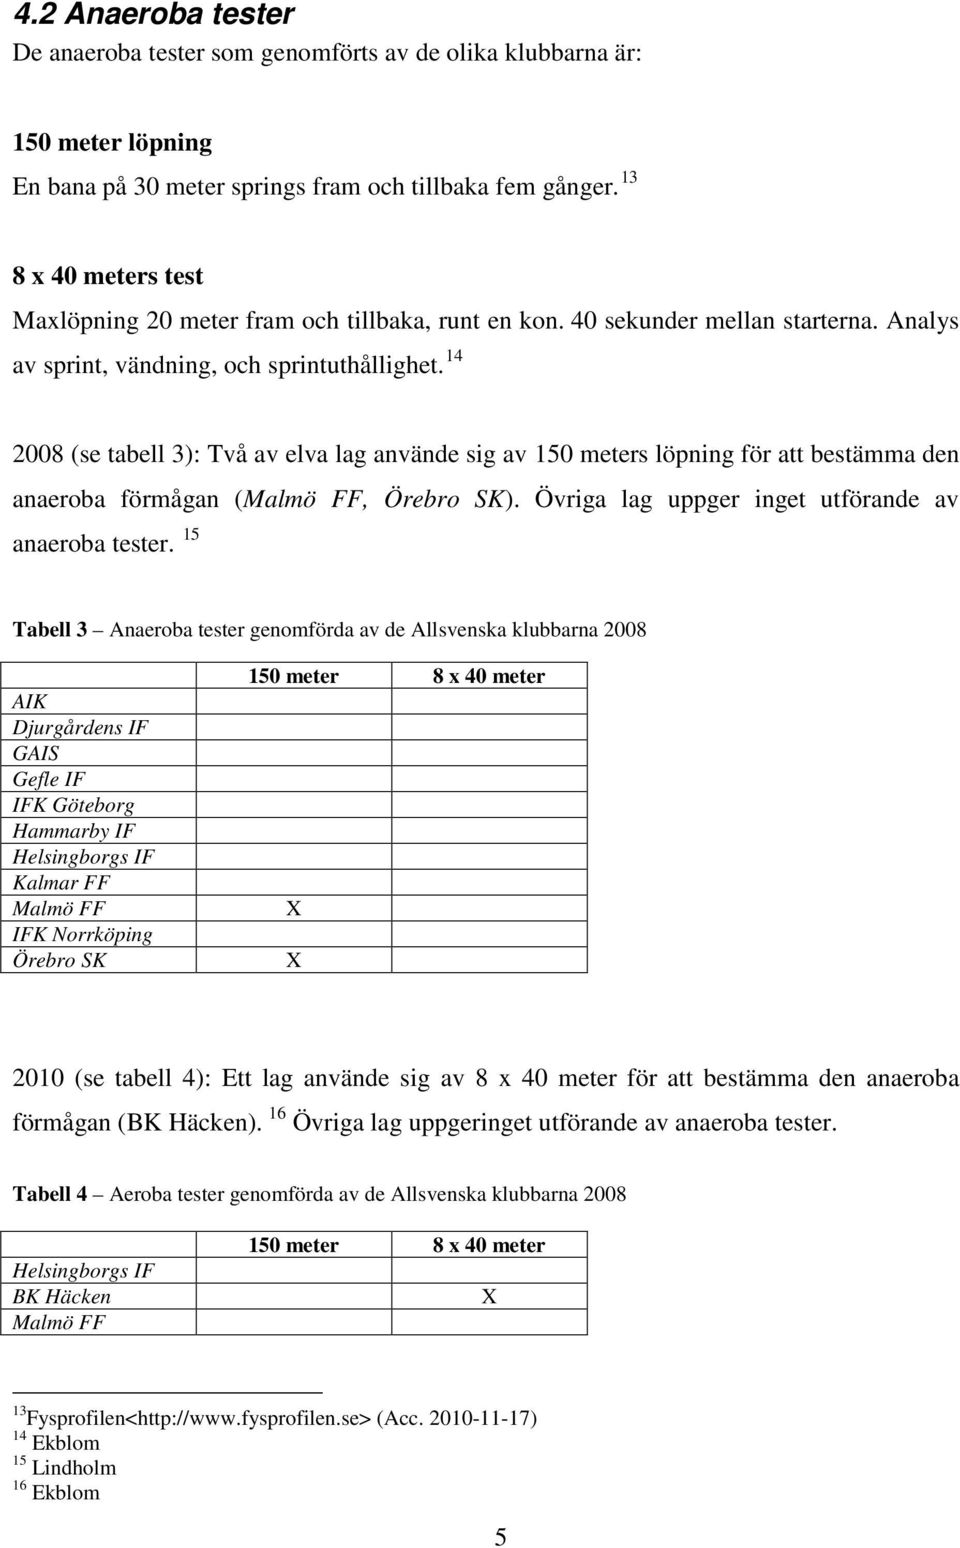 14 2008 (se tabell 3): Två av elva lag använde sig av 150 meters löpning för att bestämma den anaeroba förmågan (Malmö FF, Örebro SK). Övriga lag uppger inget utförande av anaeroba tester.